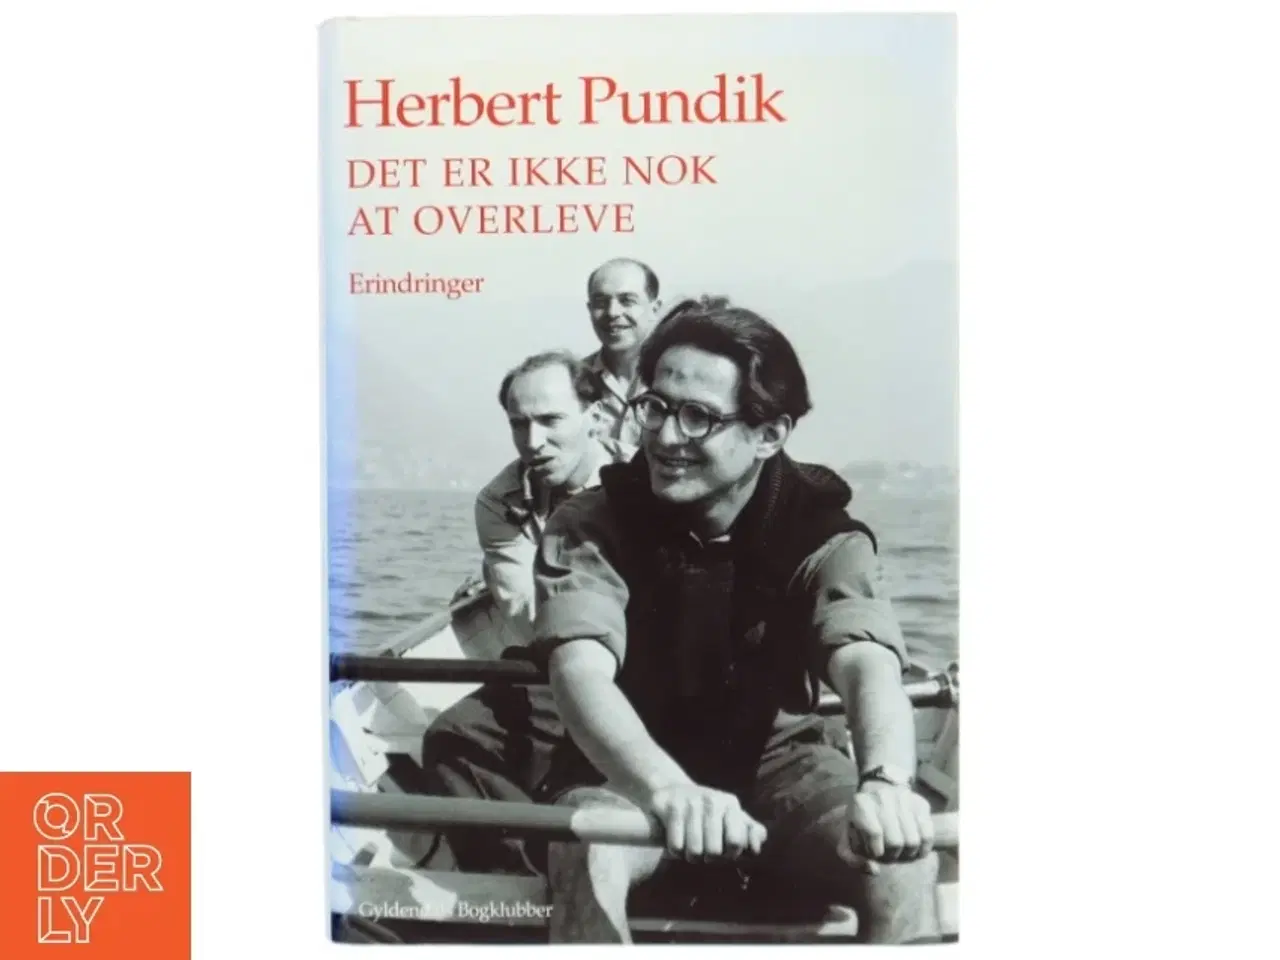 Billede 1 - Det er ikke nok at overleve : erindringer af Herbert Pundik (Bog)